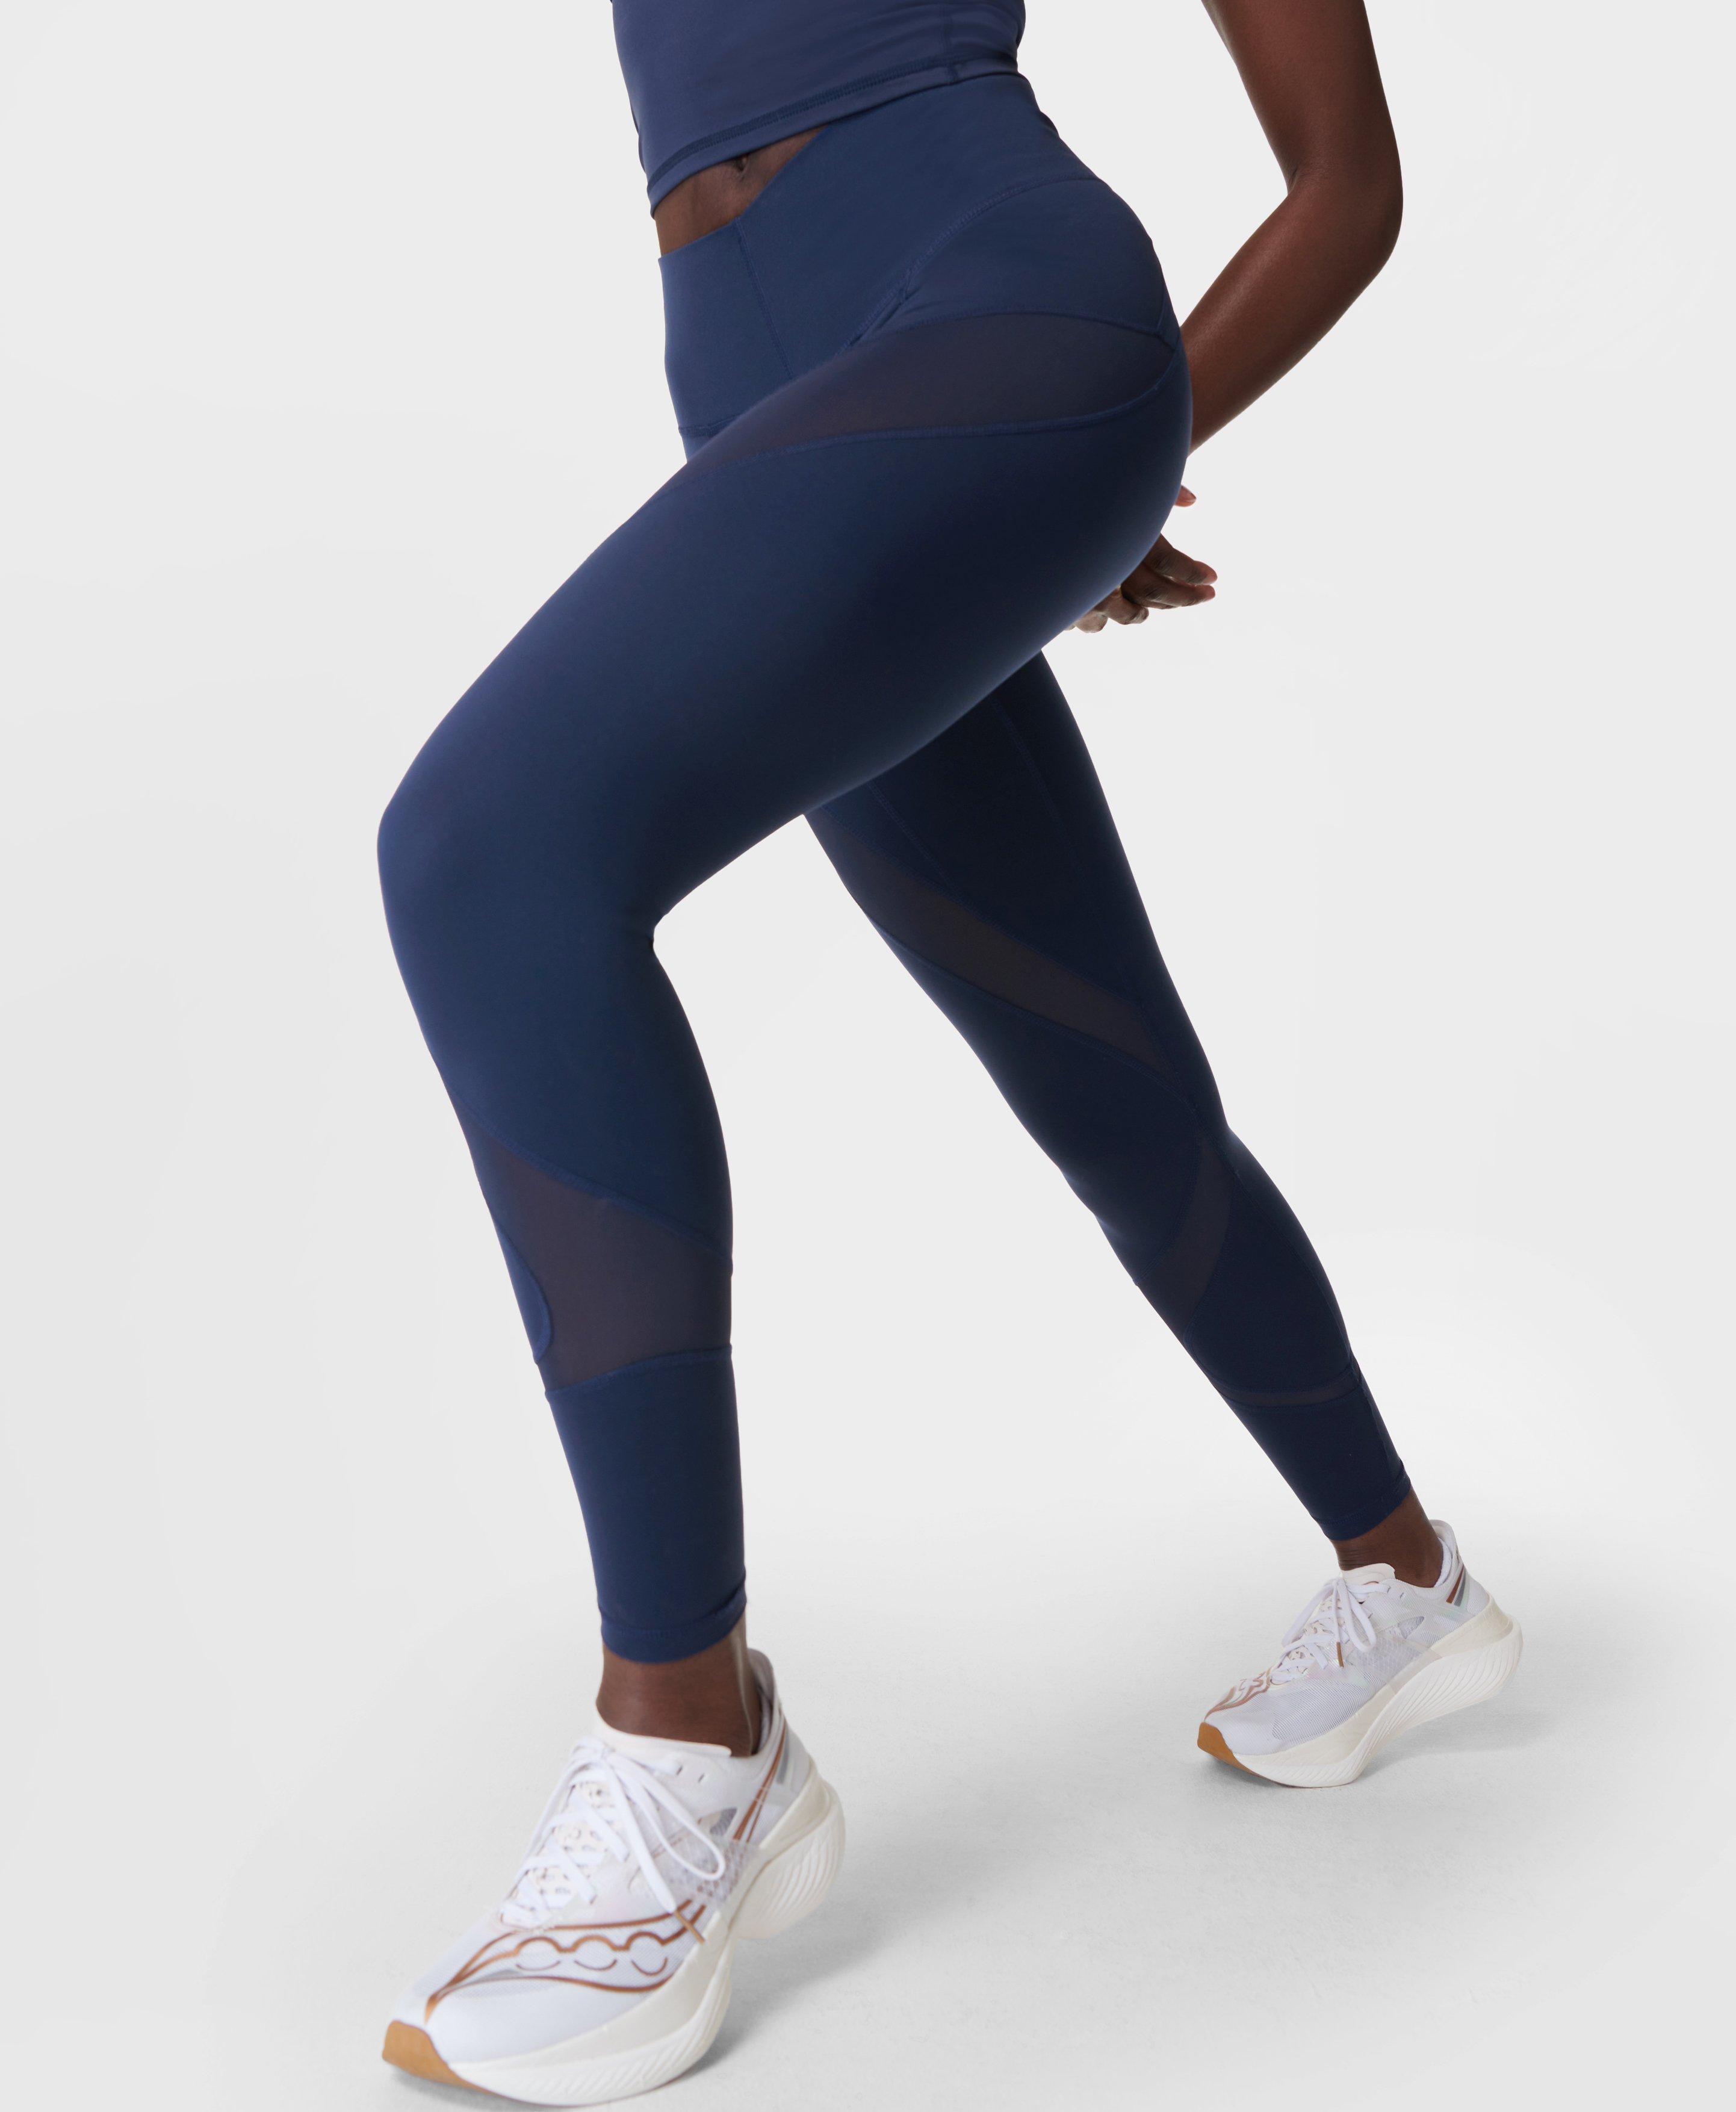 Power 7/8 Workout Leggings - Navy Blue, Women's Leggings